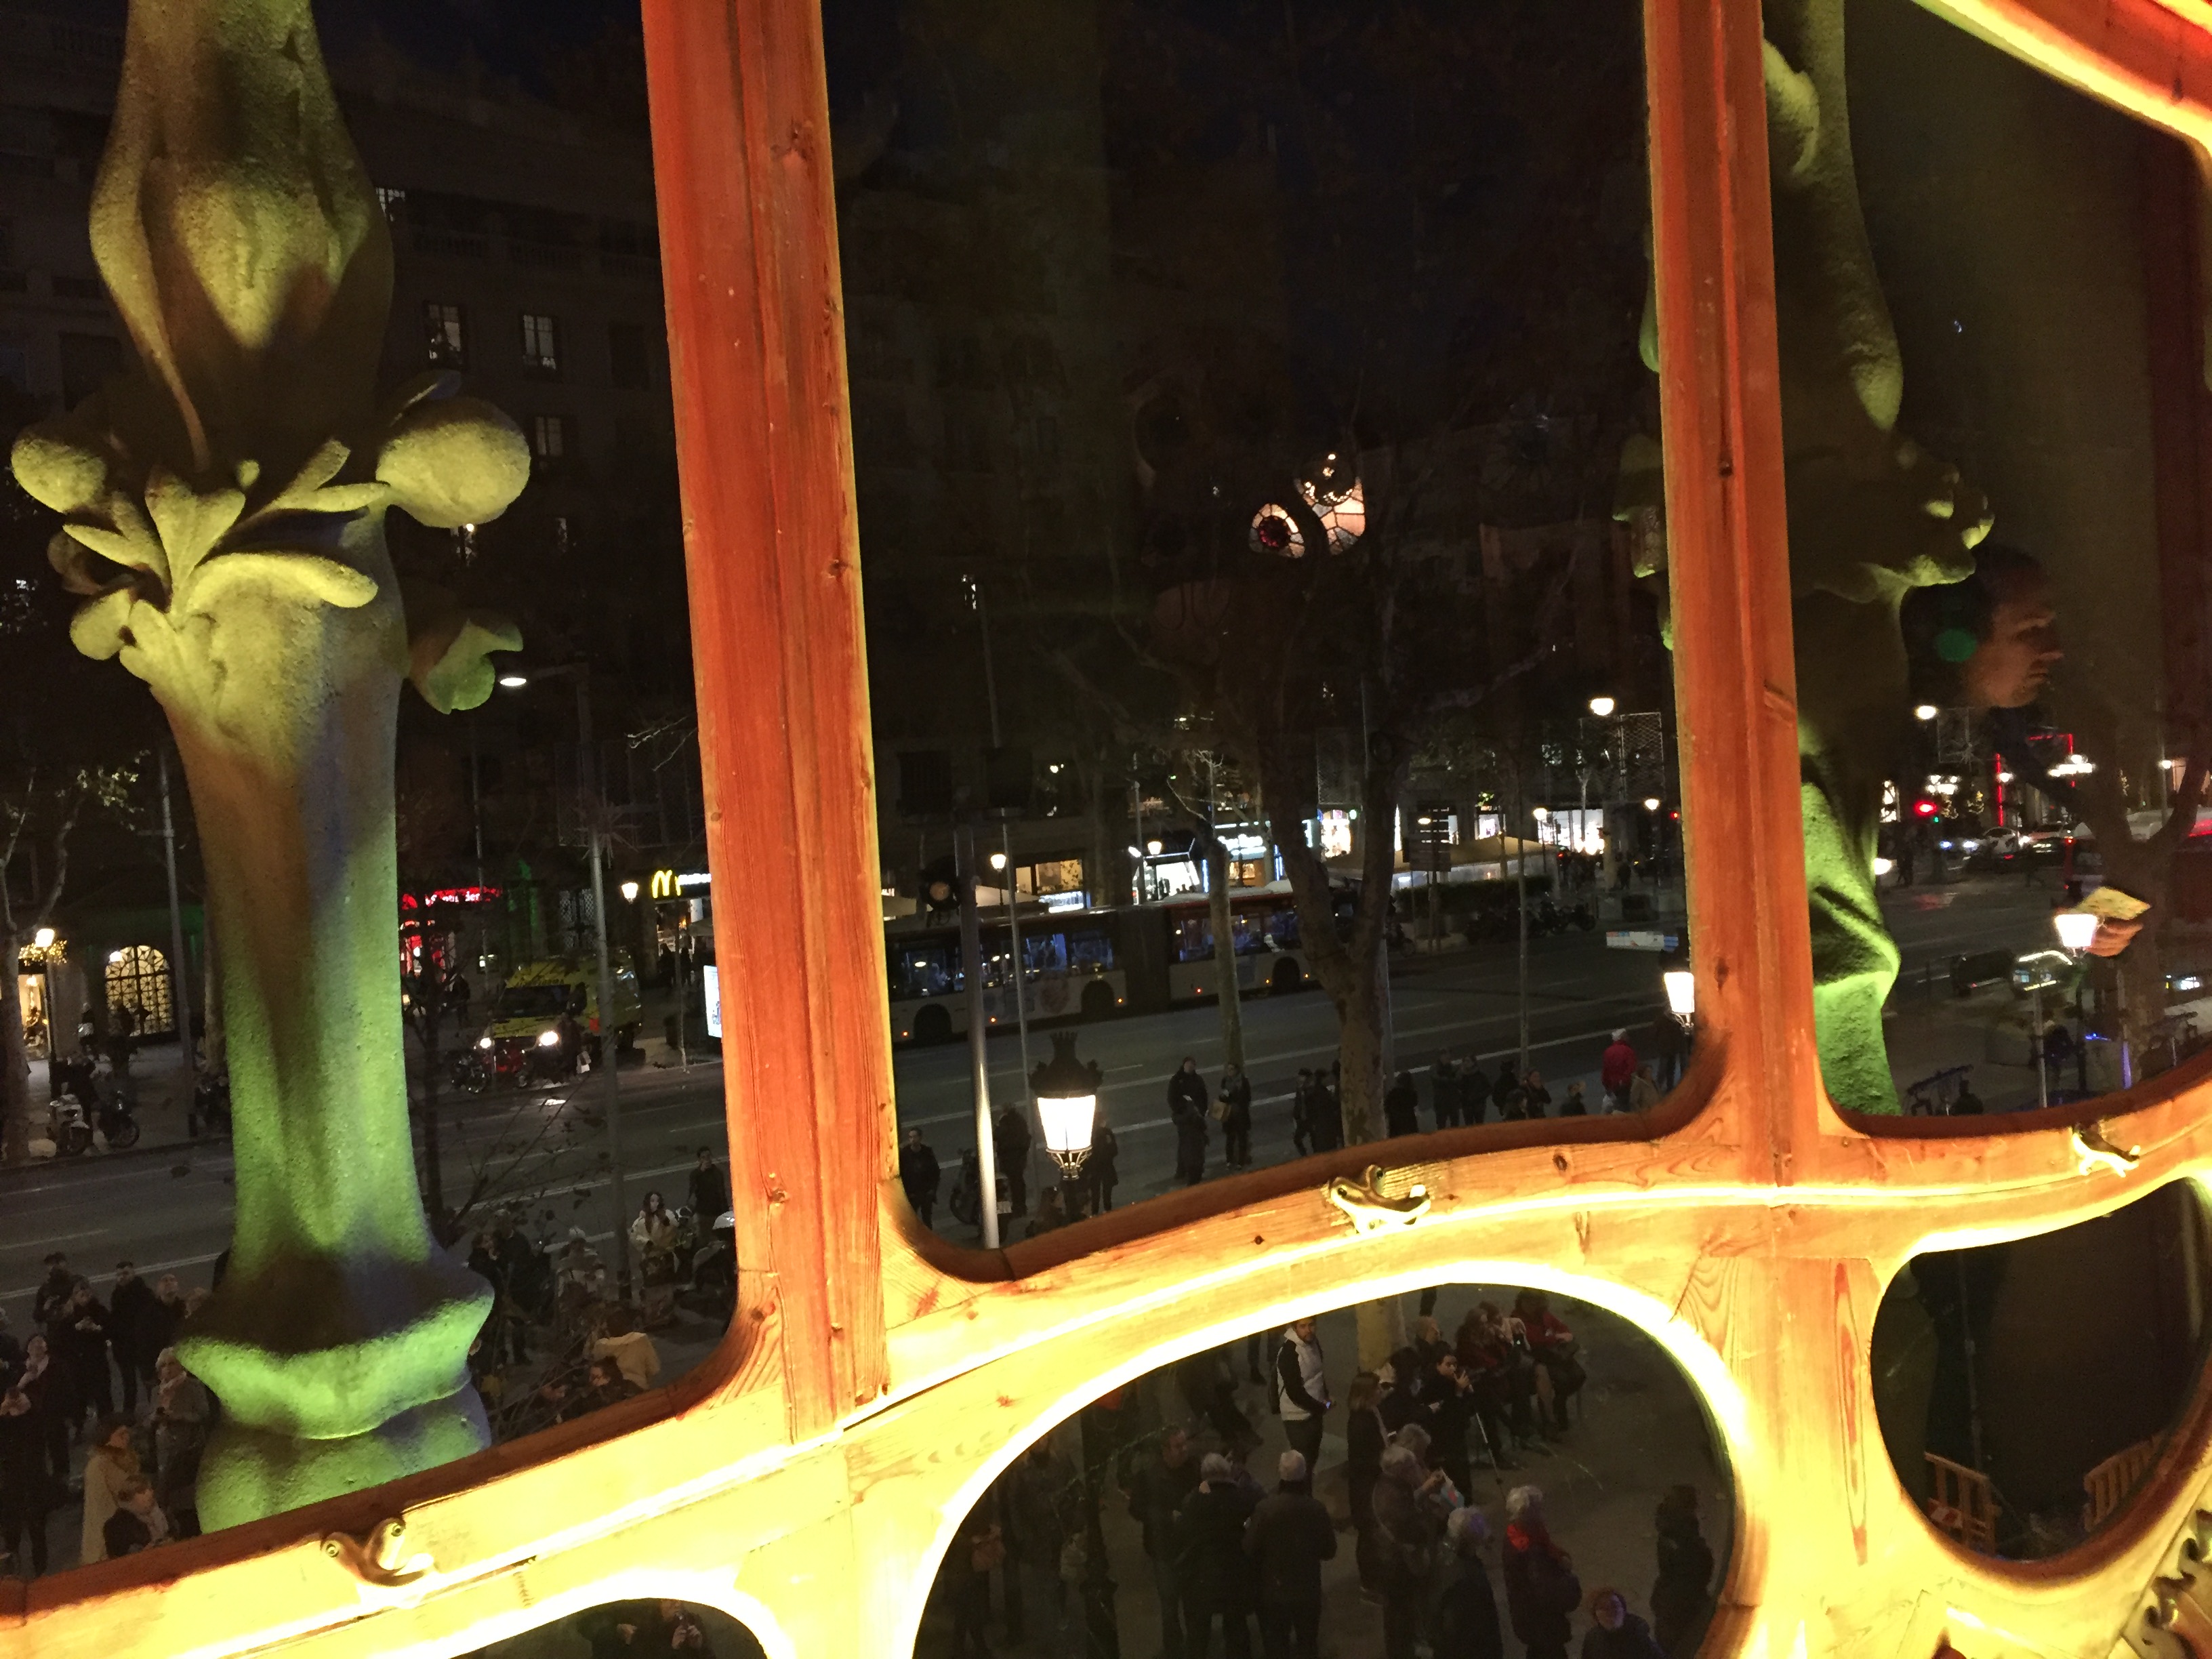 IMG 0845 - Visita a la Casa Batlló en Barcelona Parte I/II